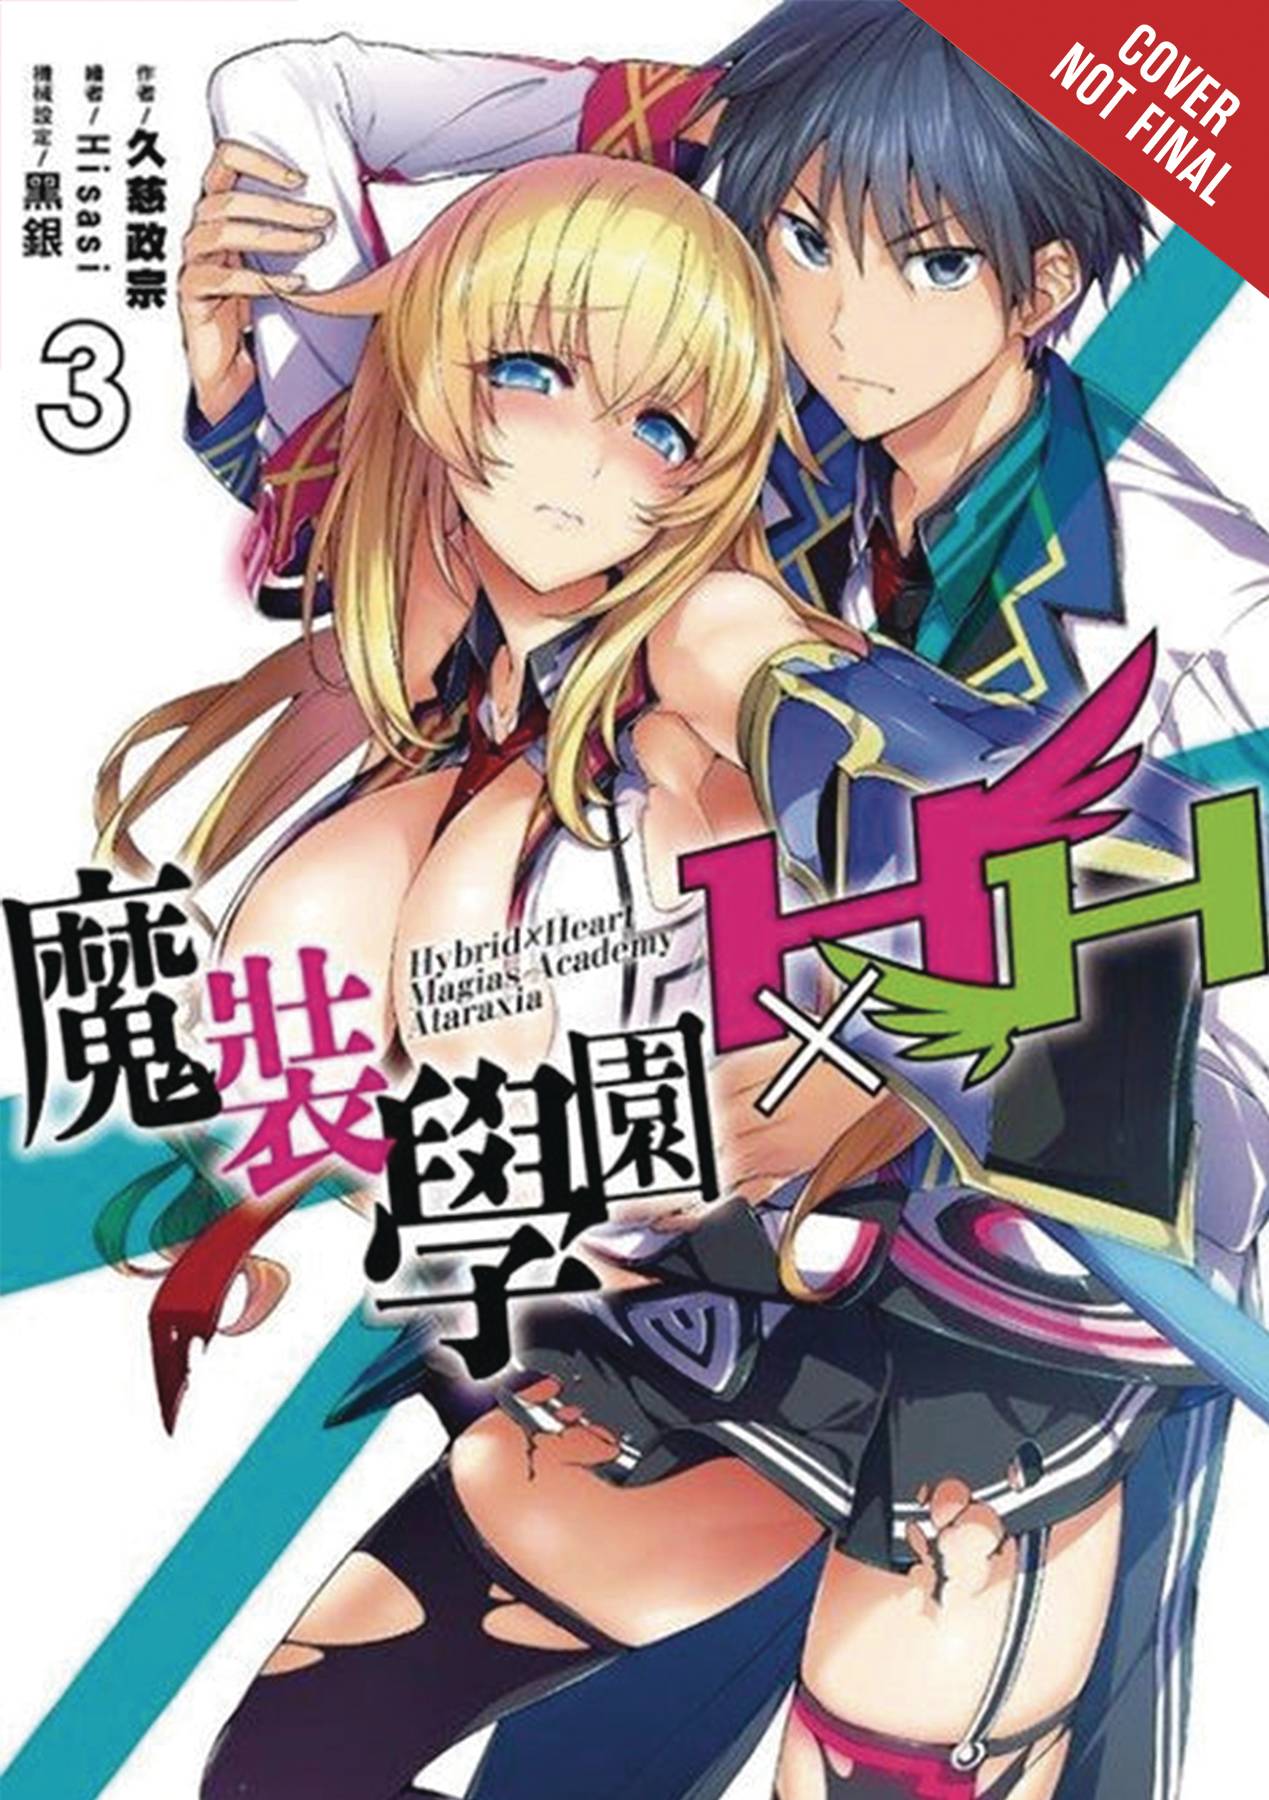 Faixa 03 - Anime X Novel